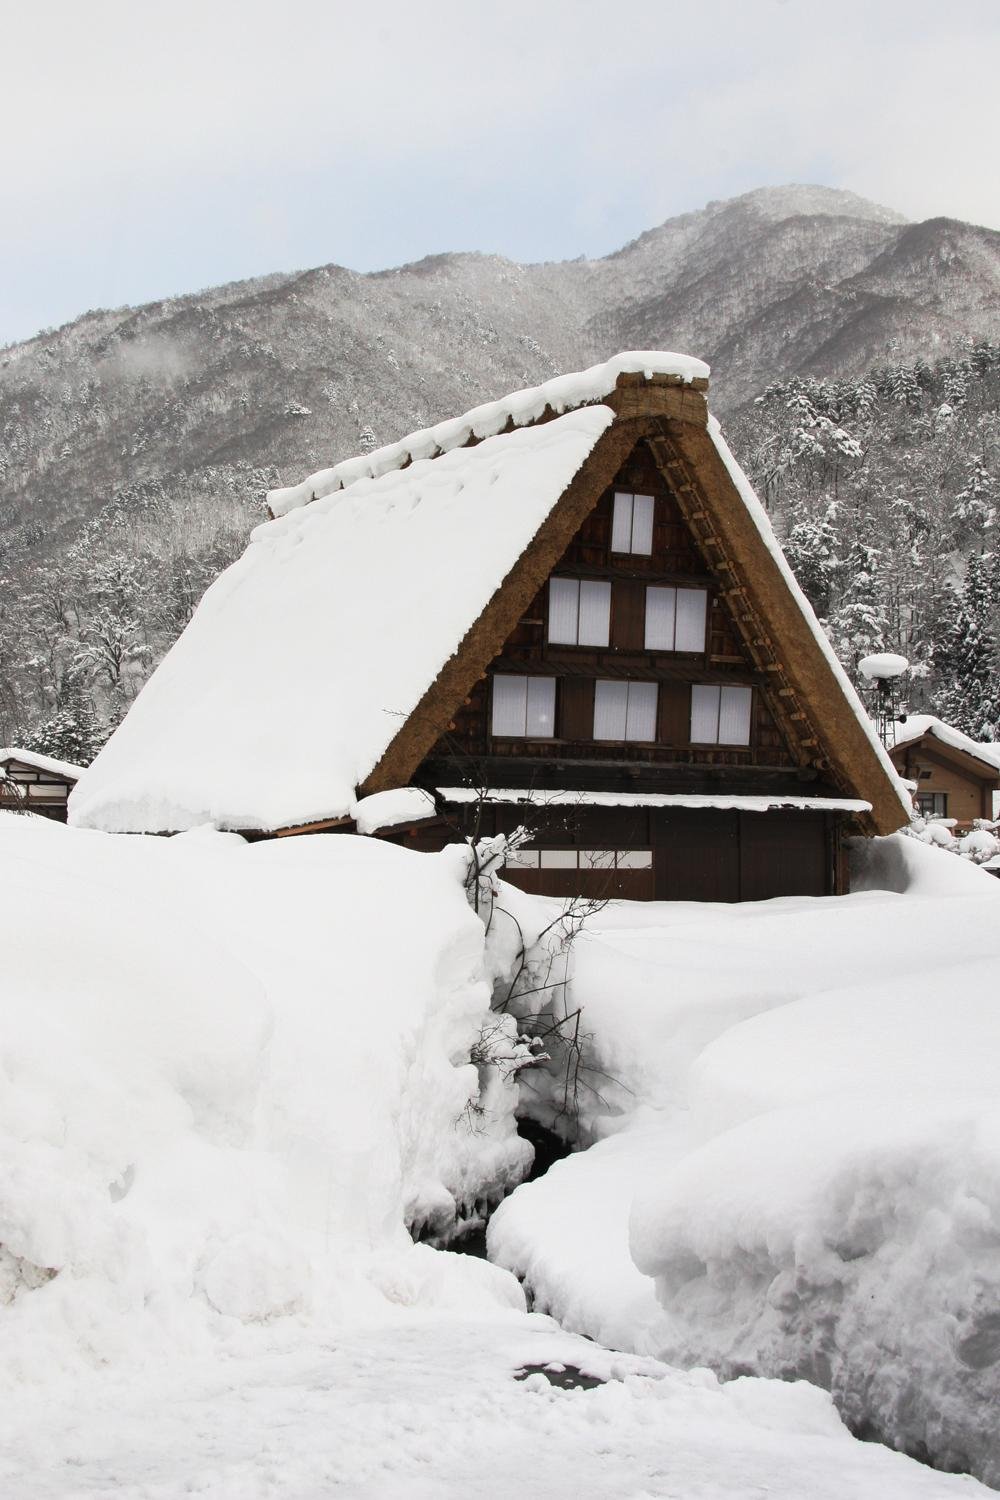 &#39;갓쇼즈쿠리&#39;라고 알려진 전통 가옥 모양을 그대로 갖고 있는 시라카와고. 이 전통 가옥의 건축과 디자인은 겨울 내내 겪는 폭설에 잘 견딜 수 있게끔 설계되어 있다.